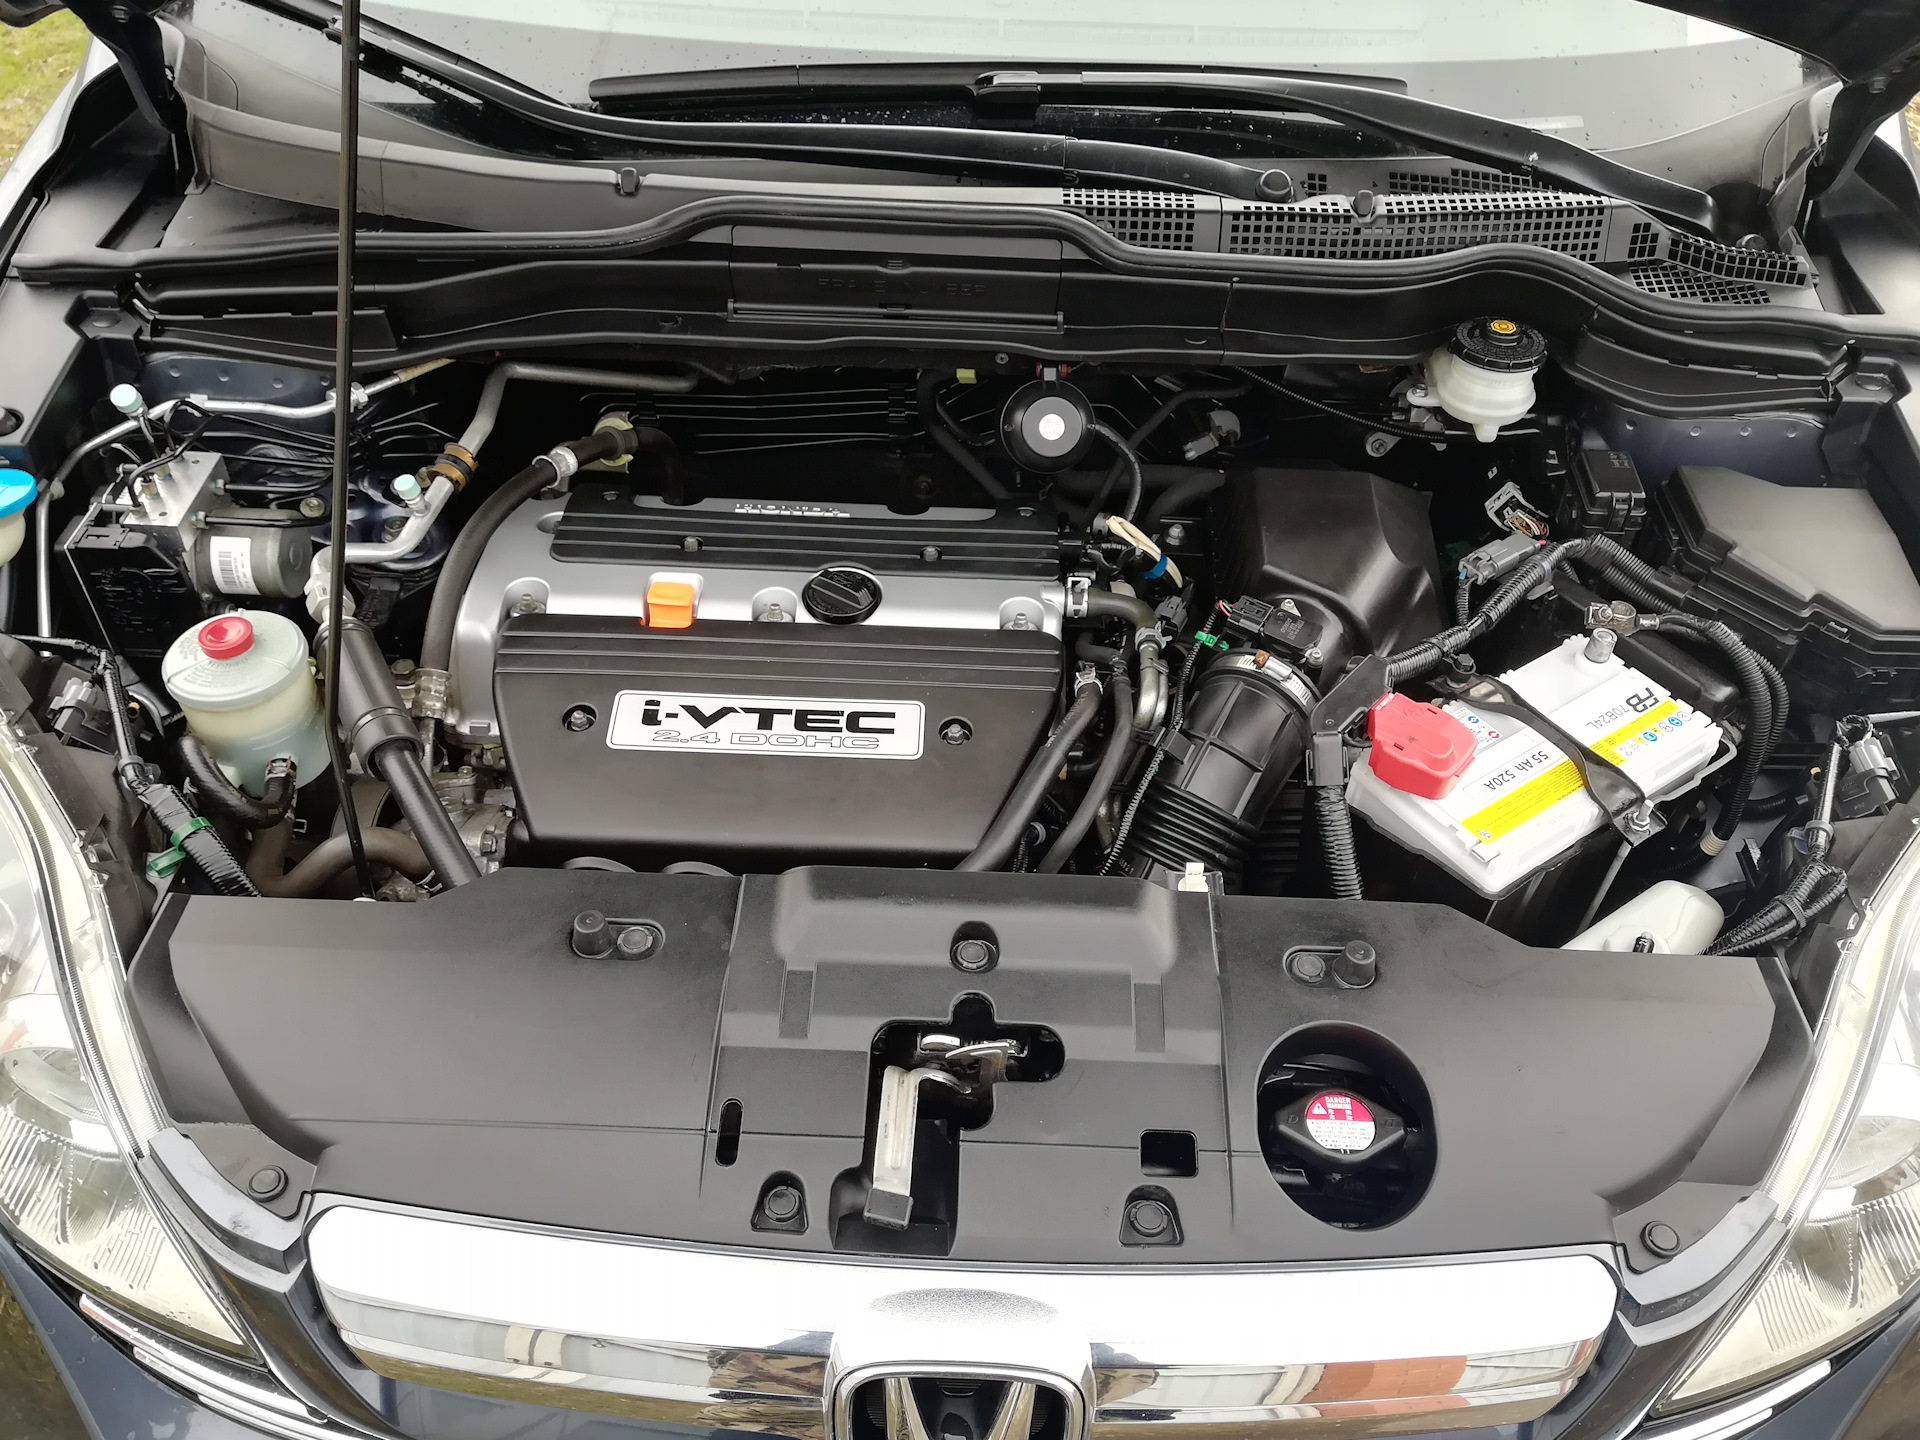 Панель под капотом. Подкапотное Honda CRV 3 2.0. Honda CR-V 2.4 под капотом. Хонда CRV подкапотное пространство. Хонда ЦРВ под капотом.